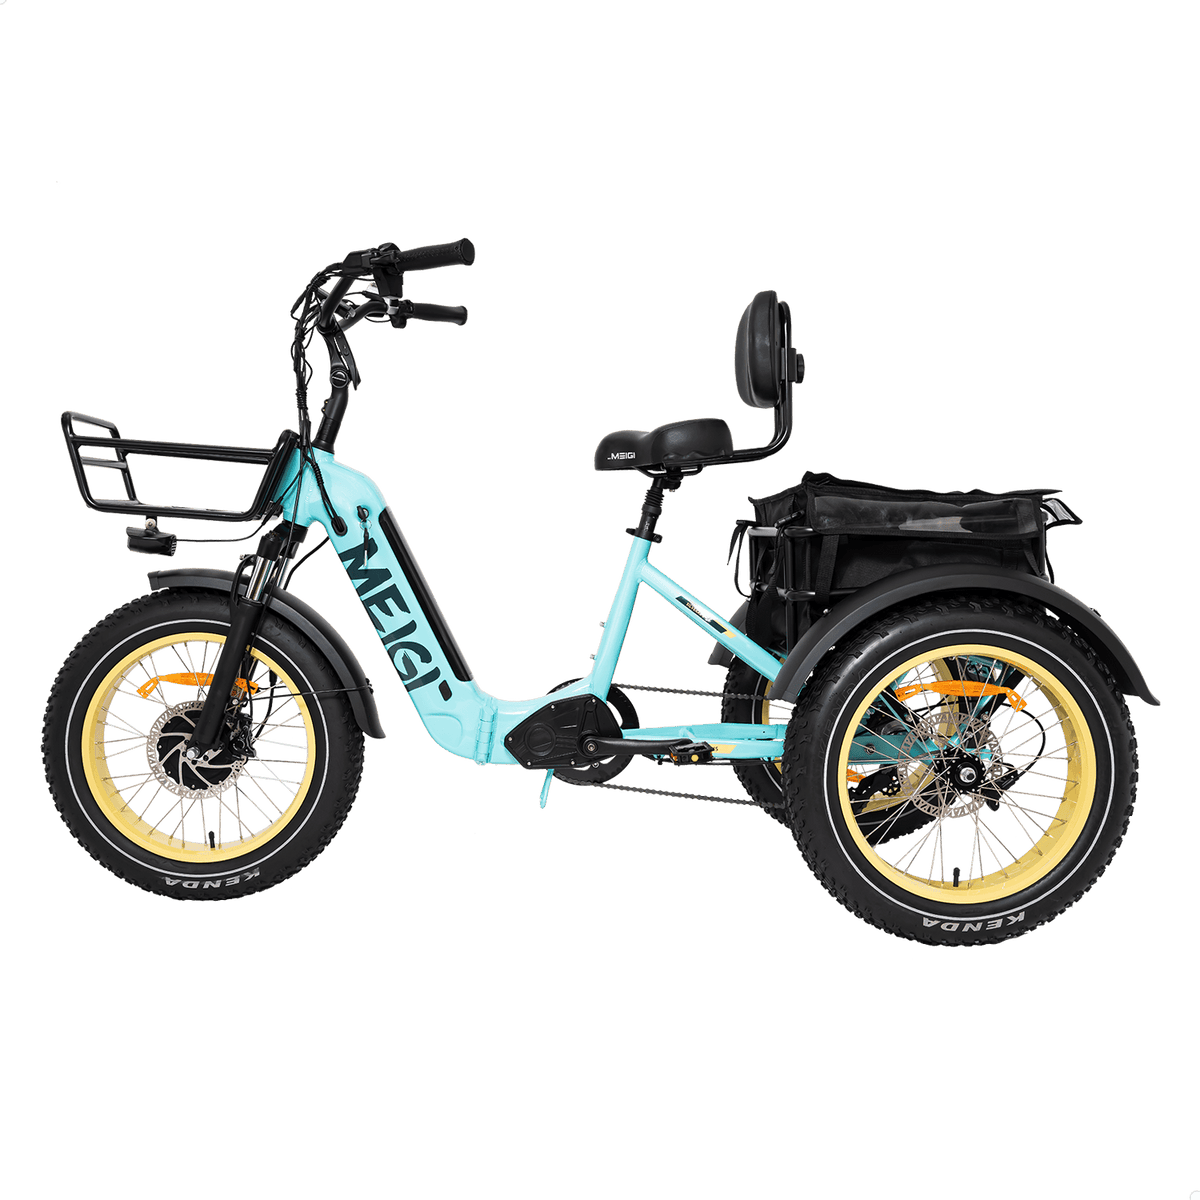 MG2301-SILVERADO-HD Fat Tire Electric Tricycle - DWMEIGI